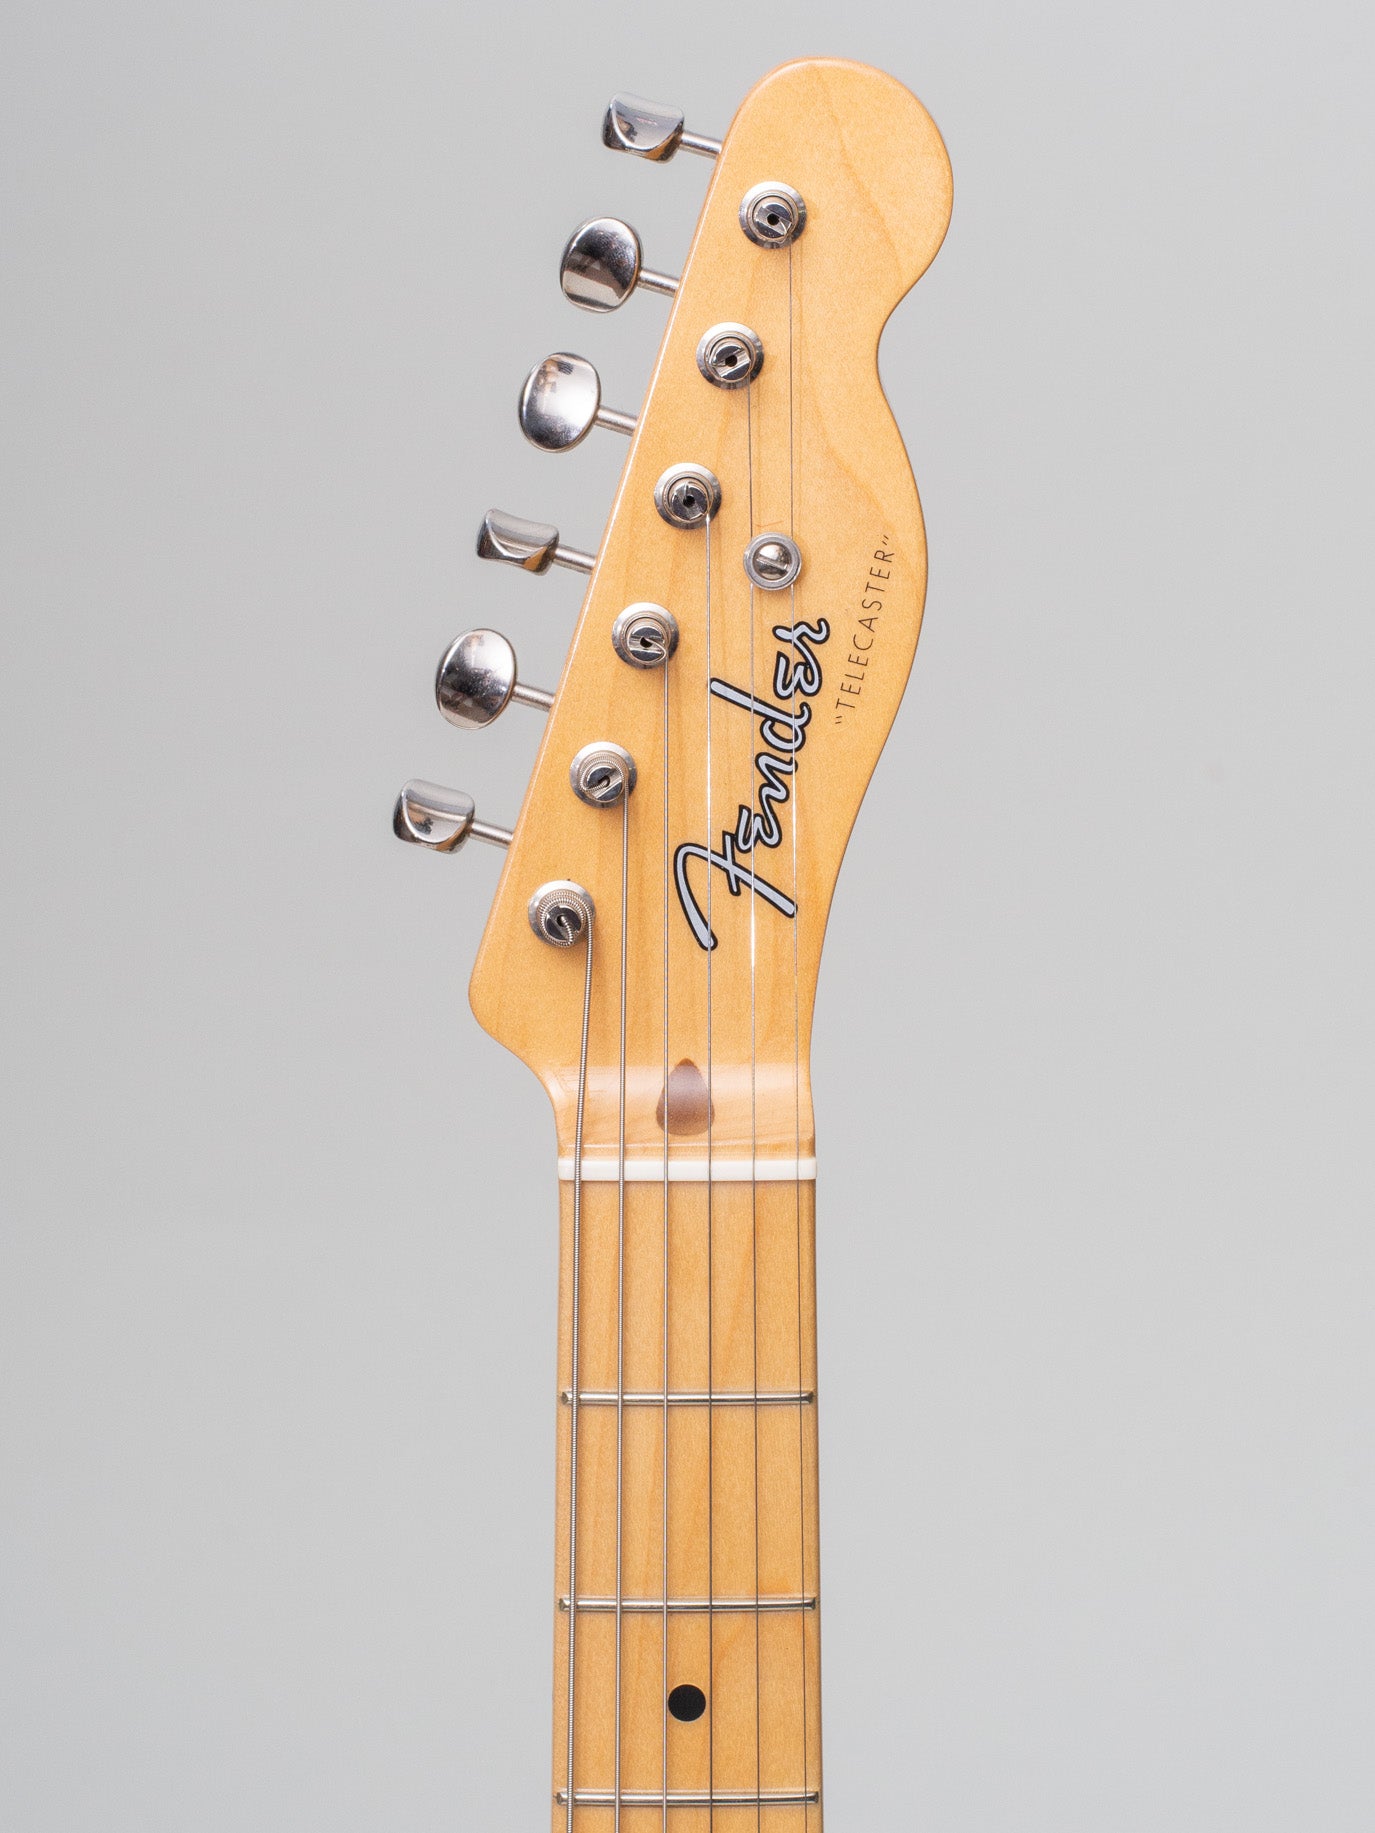 2015 Fender American Vintage 1952 Telecaster